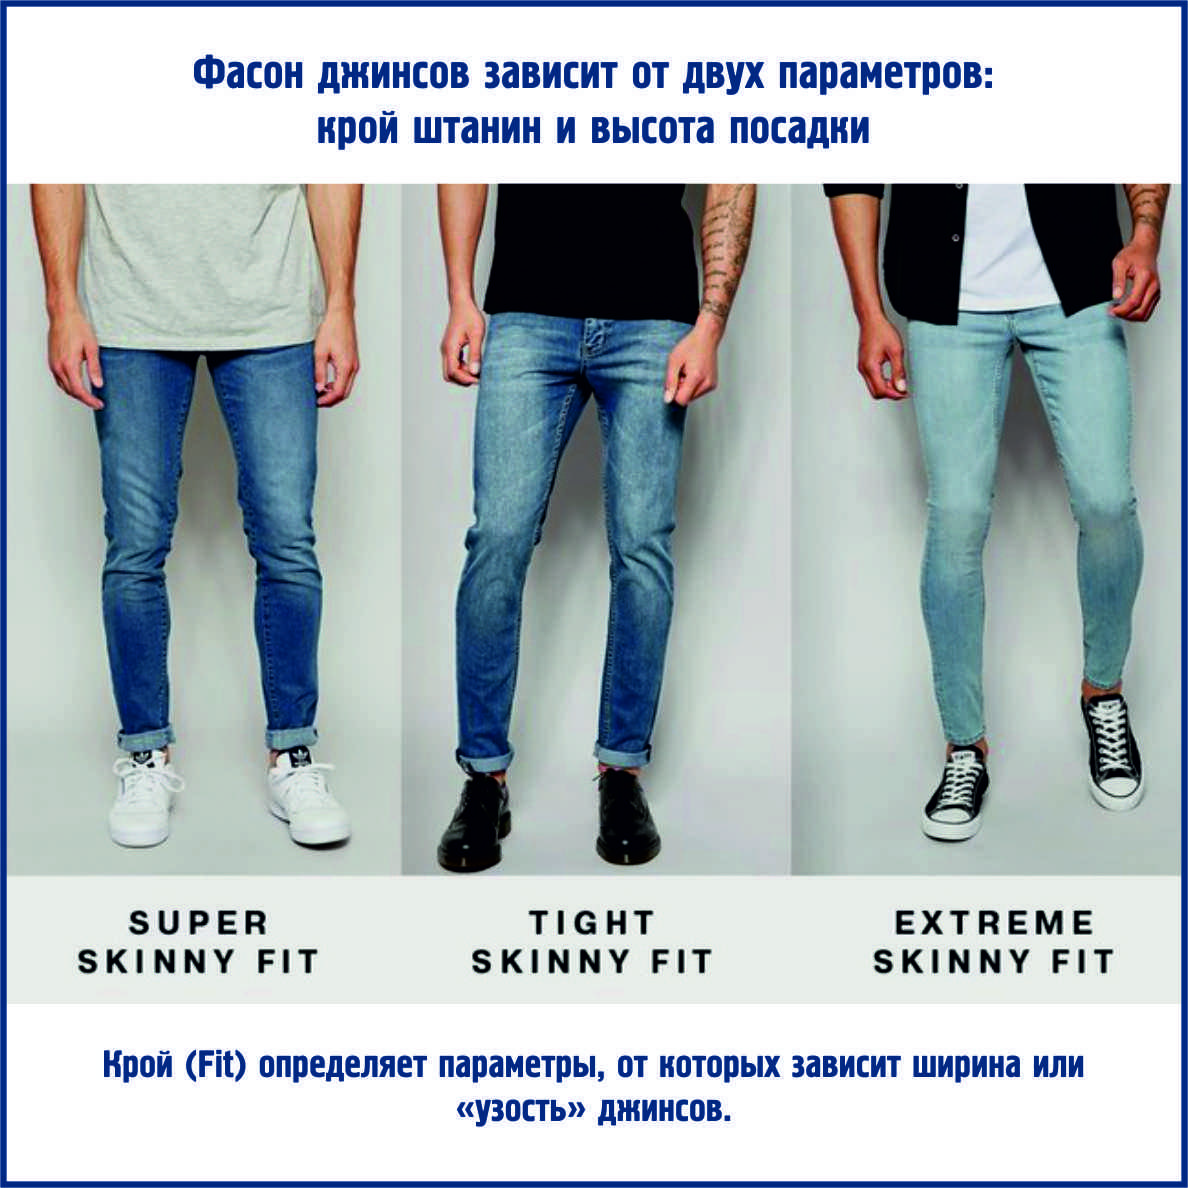 Признаки, по которым можно отличить дорогие качественные джинсы от дешевых некачественных | soberger | дзен